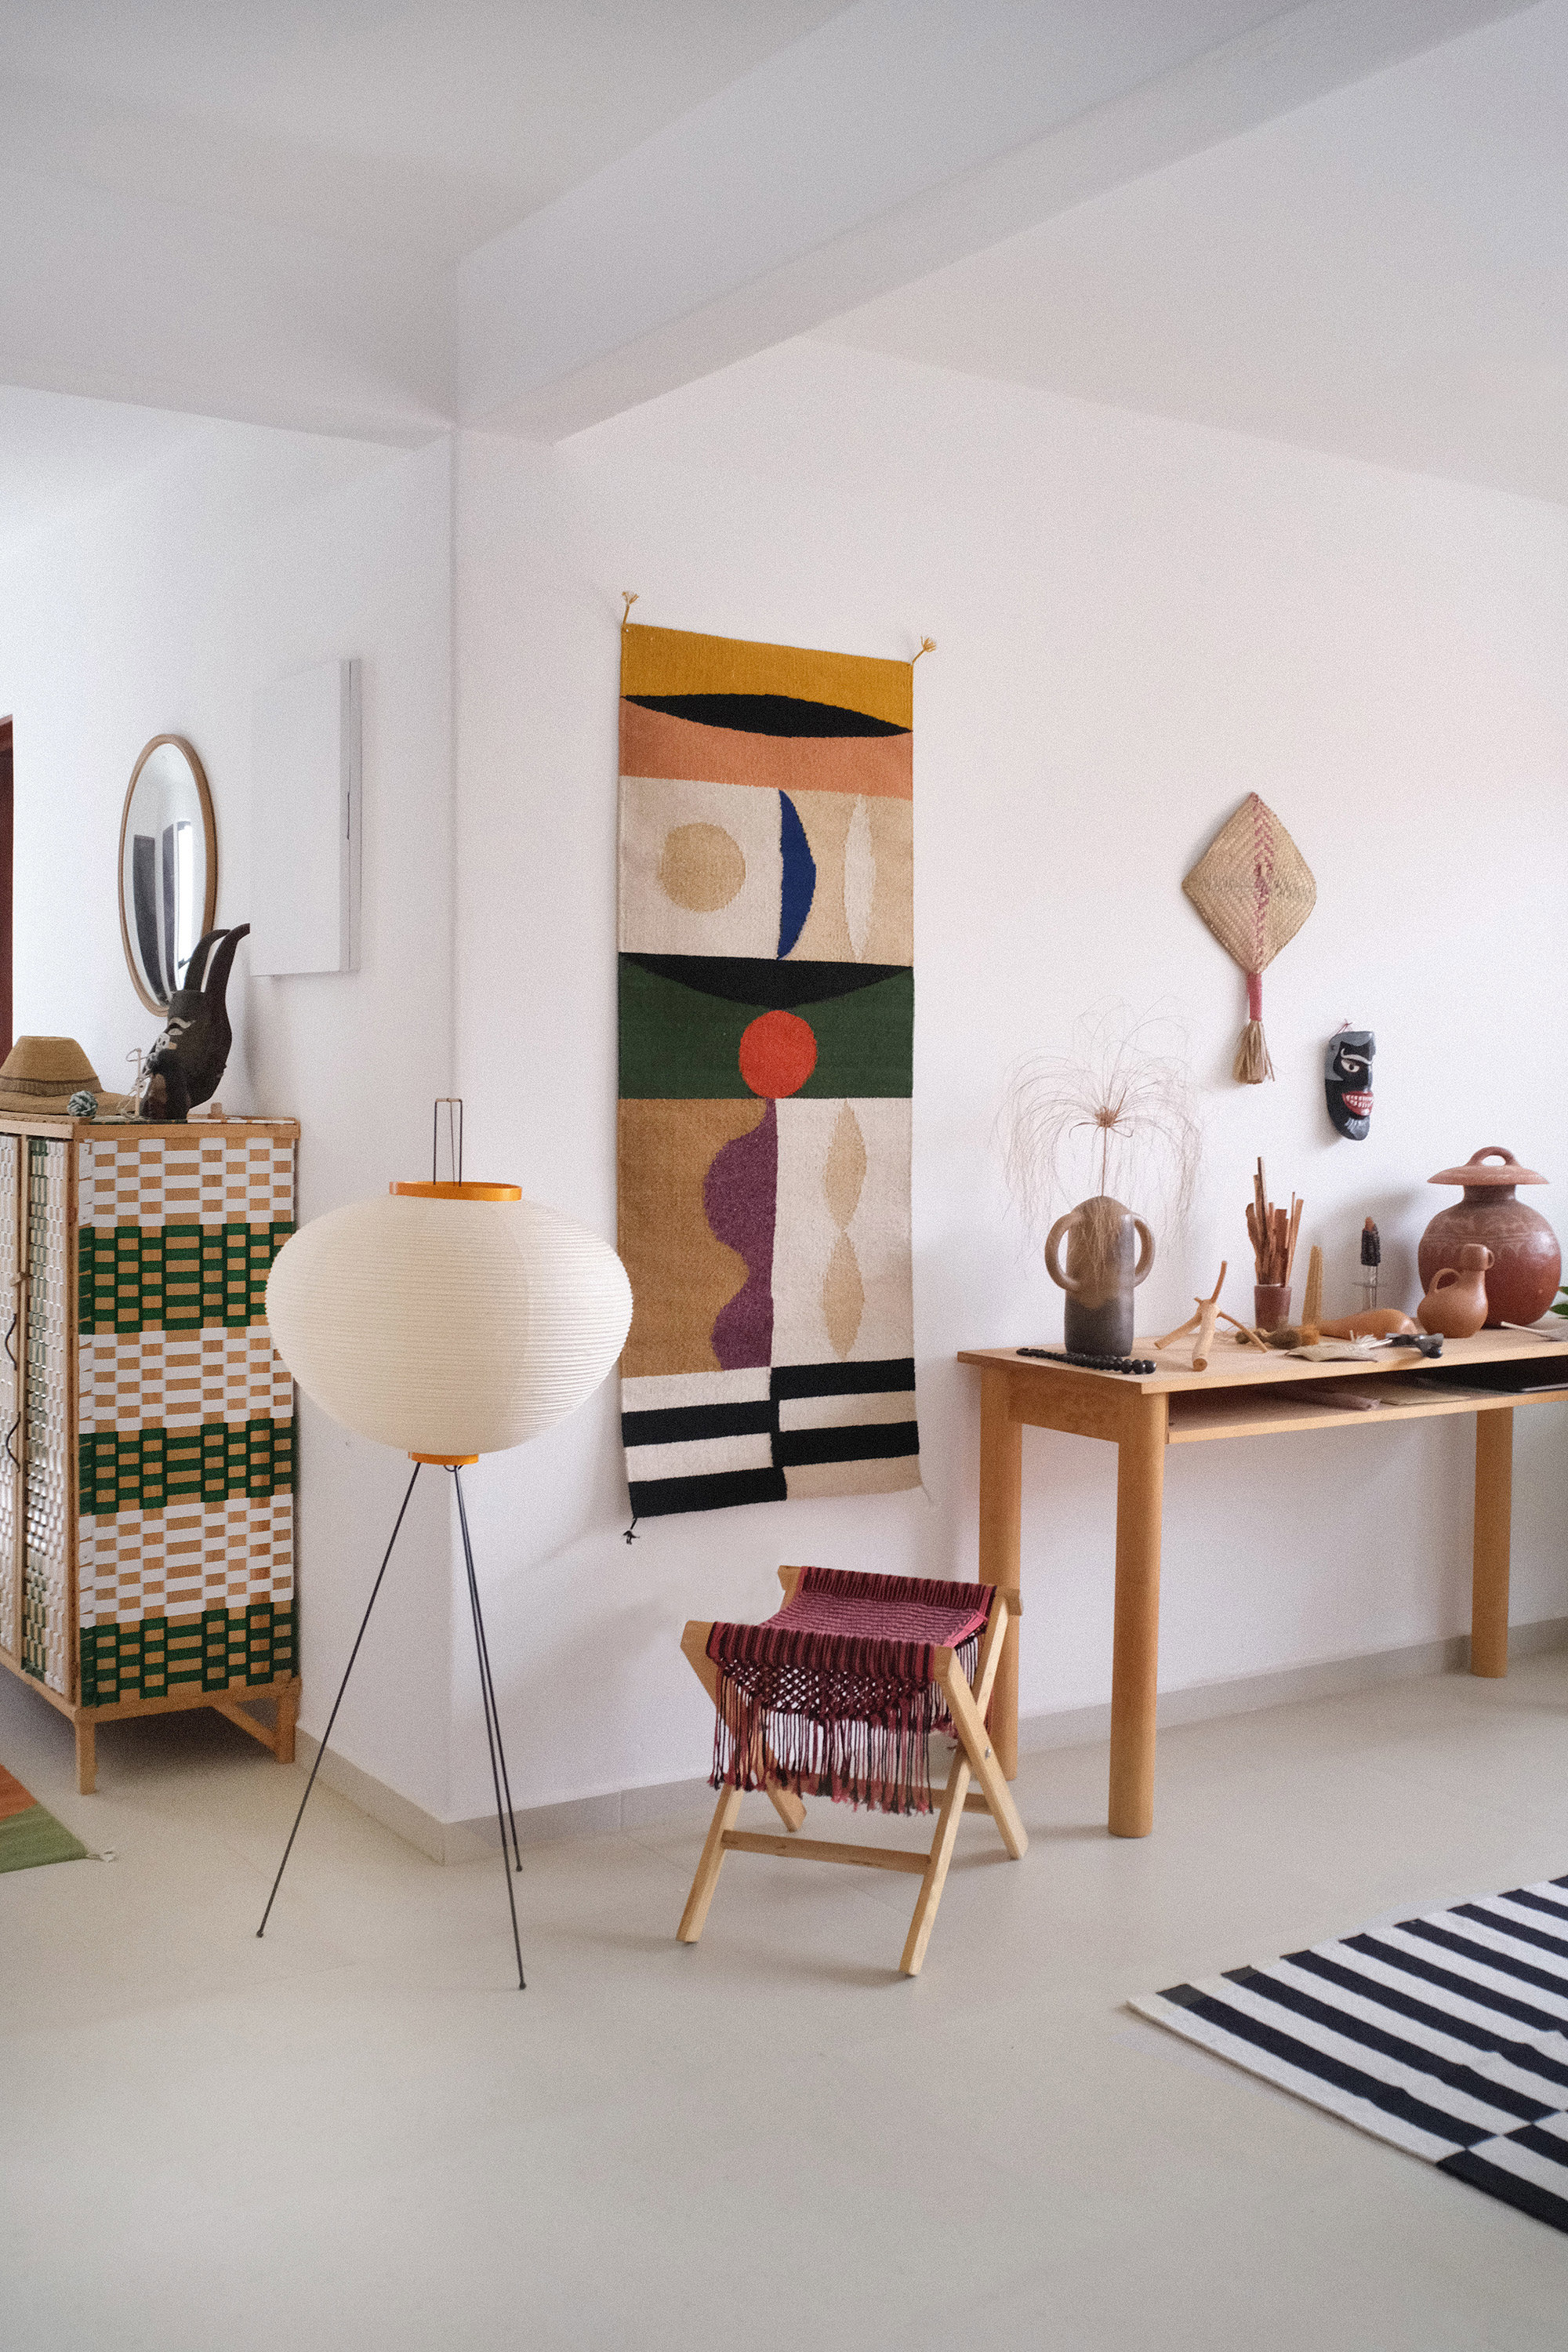 Un rincón del estudio de Javier Reyes, con onjetos diseñados por él y una lámpara de Isamu Noguchi.